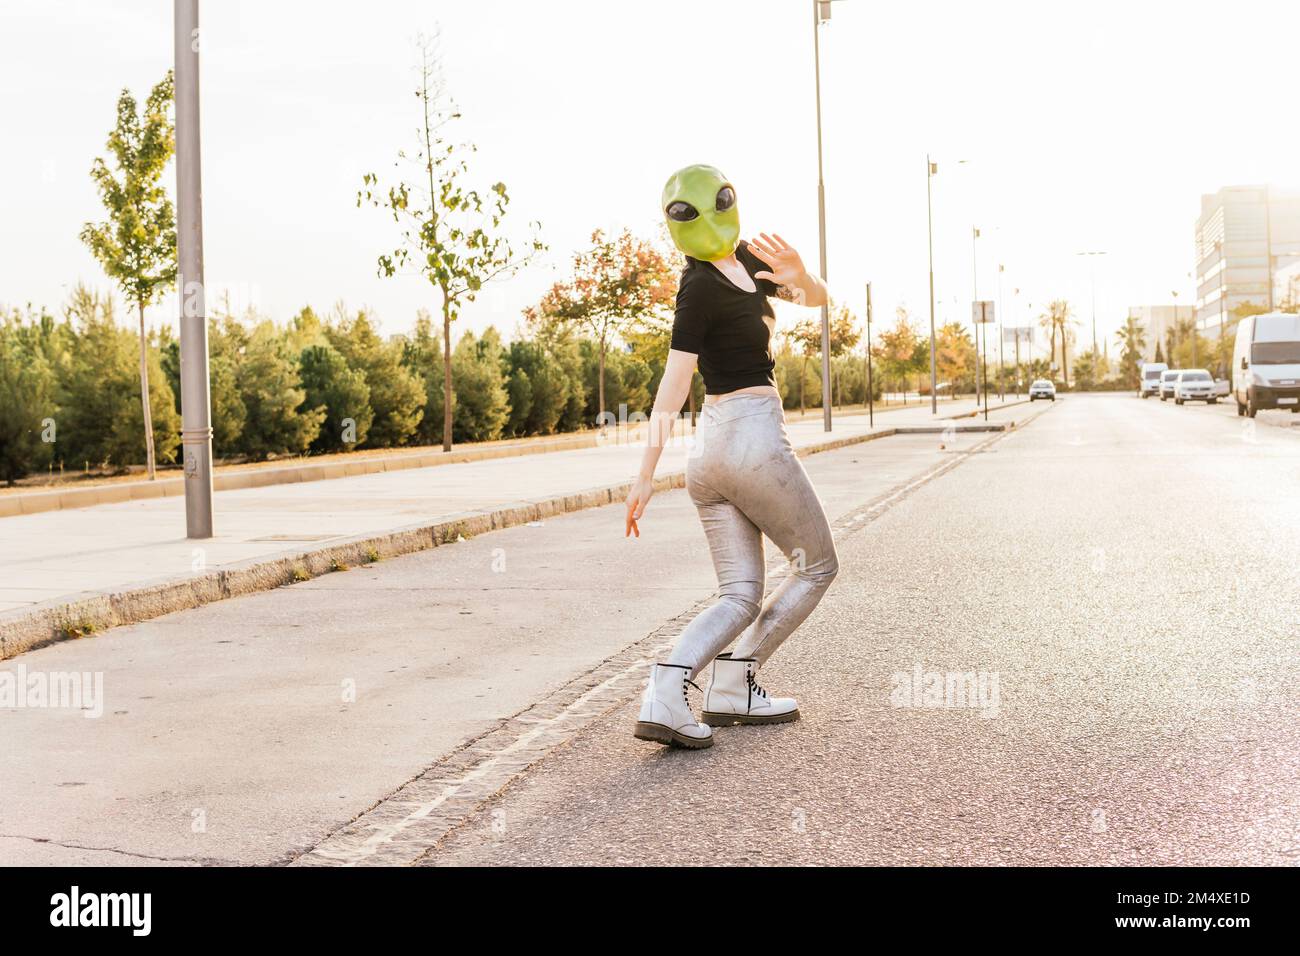 Woman wearing alien mask waving on street Stock Photo